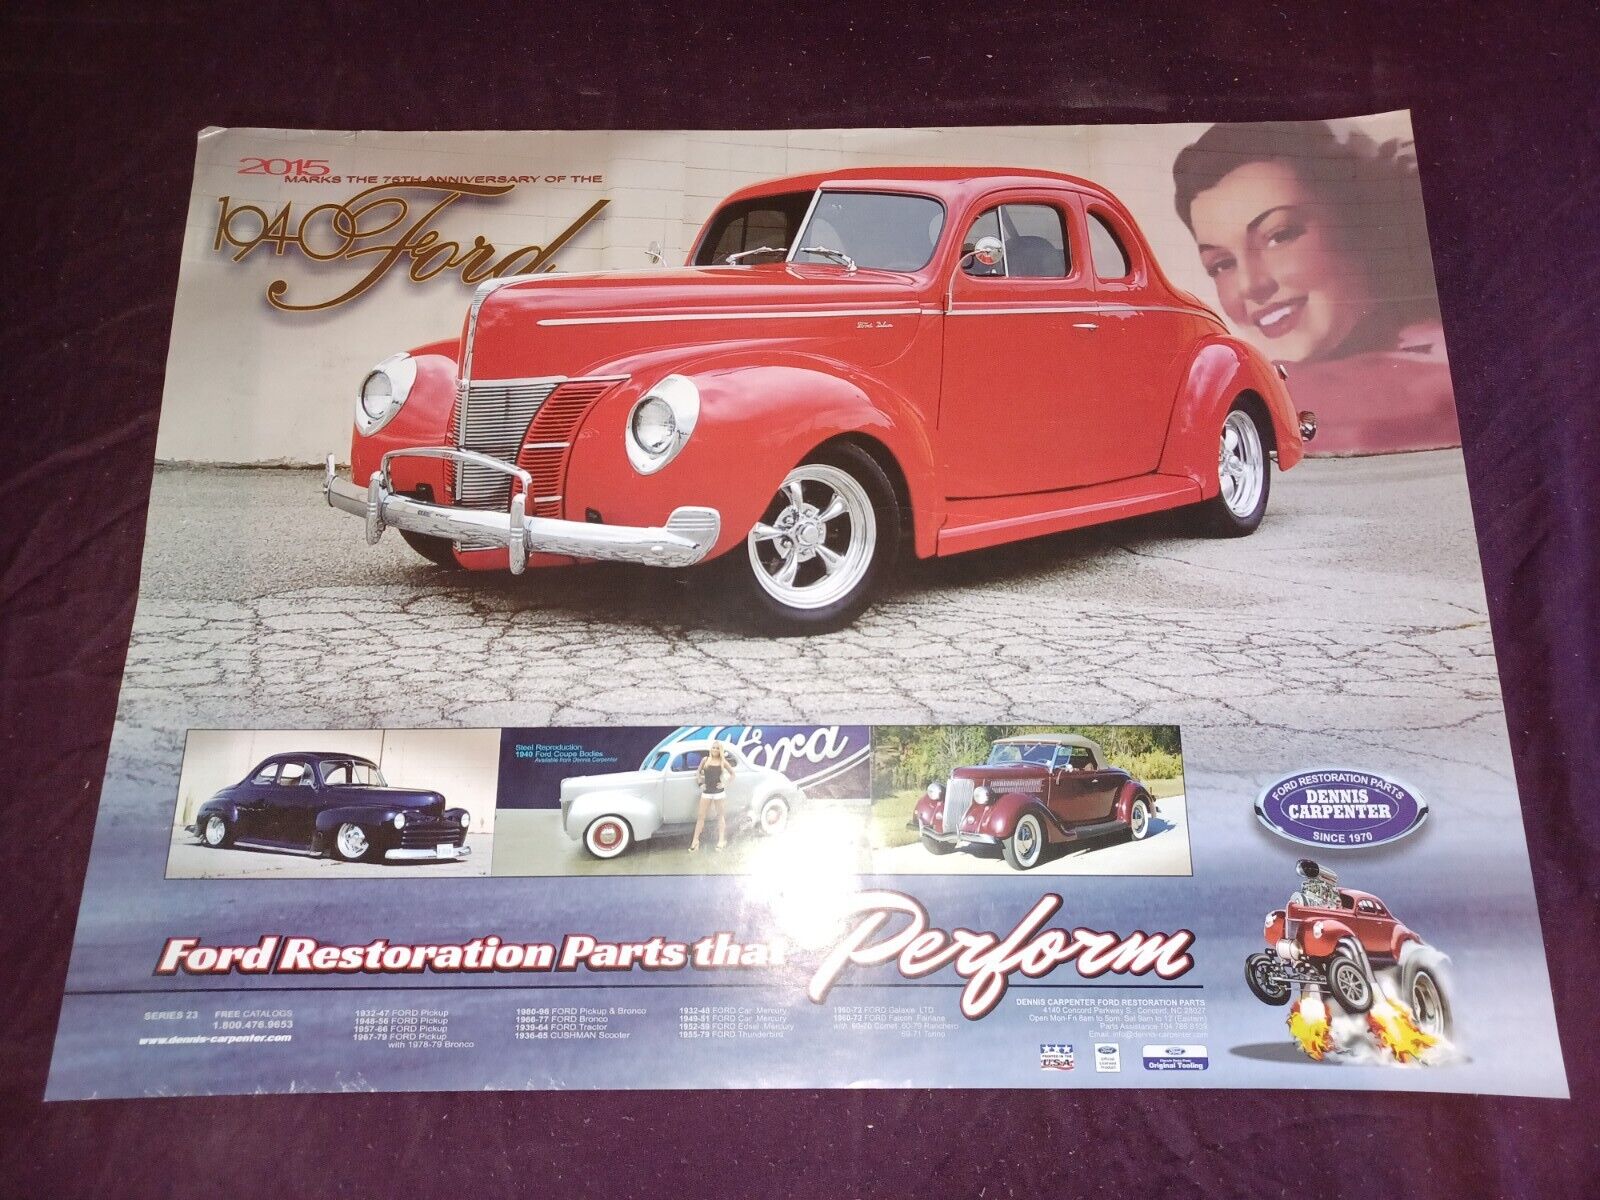 Dennis Carpenter- Ford Restoration Parts 1940 Ford Promo Poster